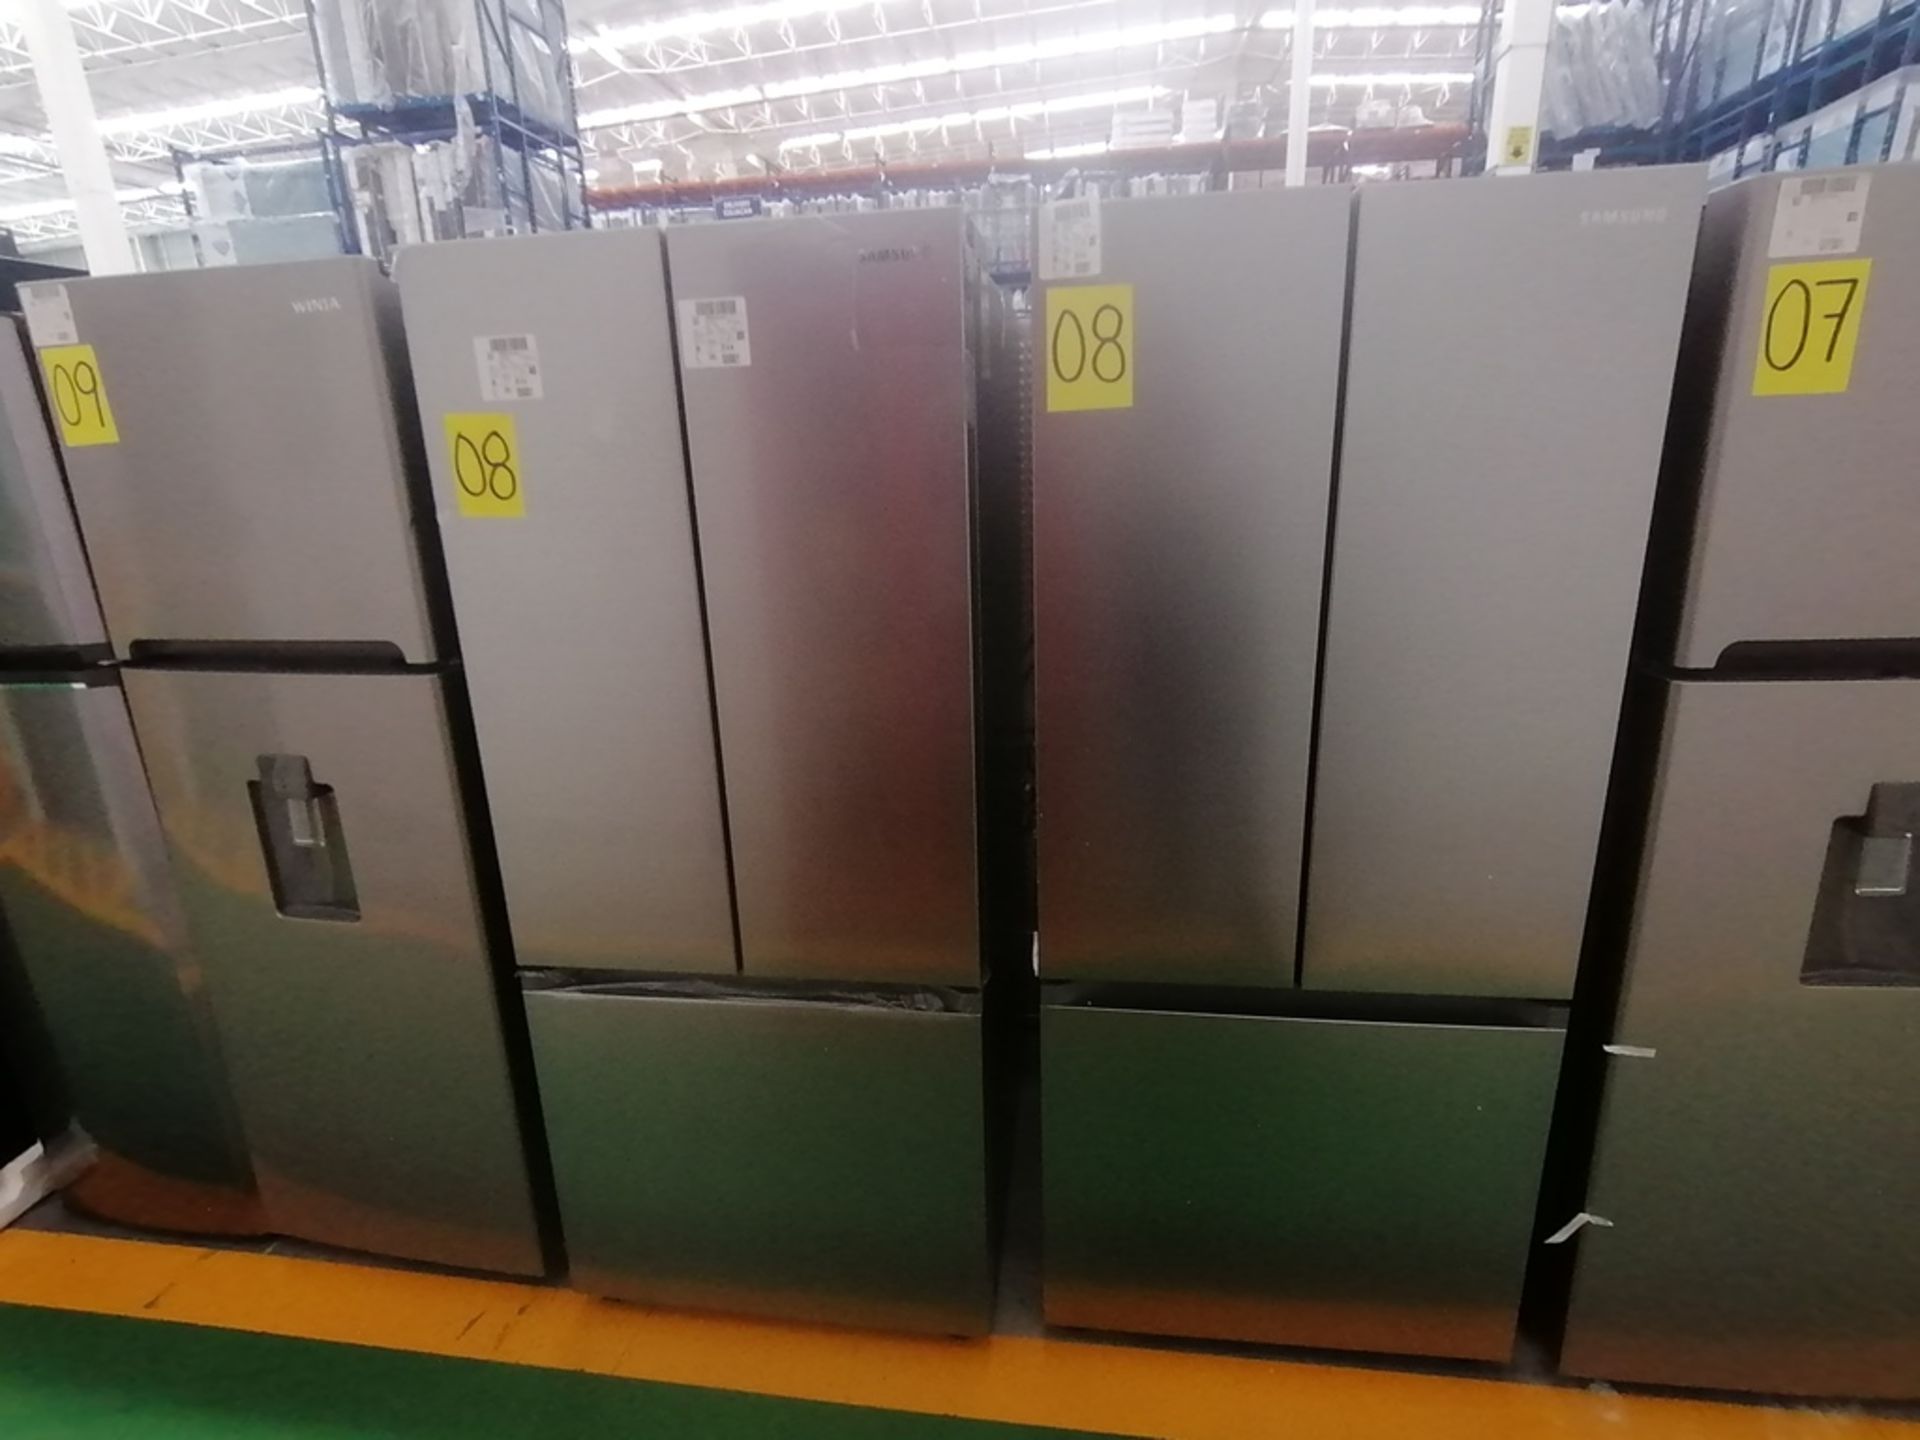 Lote de 2 refrigeradores incluye: 1 Refrigerador, Marca Samsung, Modelo RT22A401059, Serie 0BA84BBR - Image 3 of 15